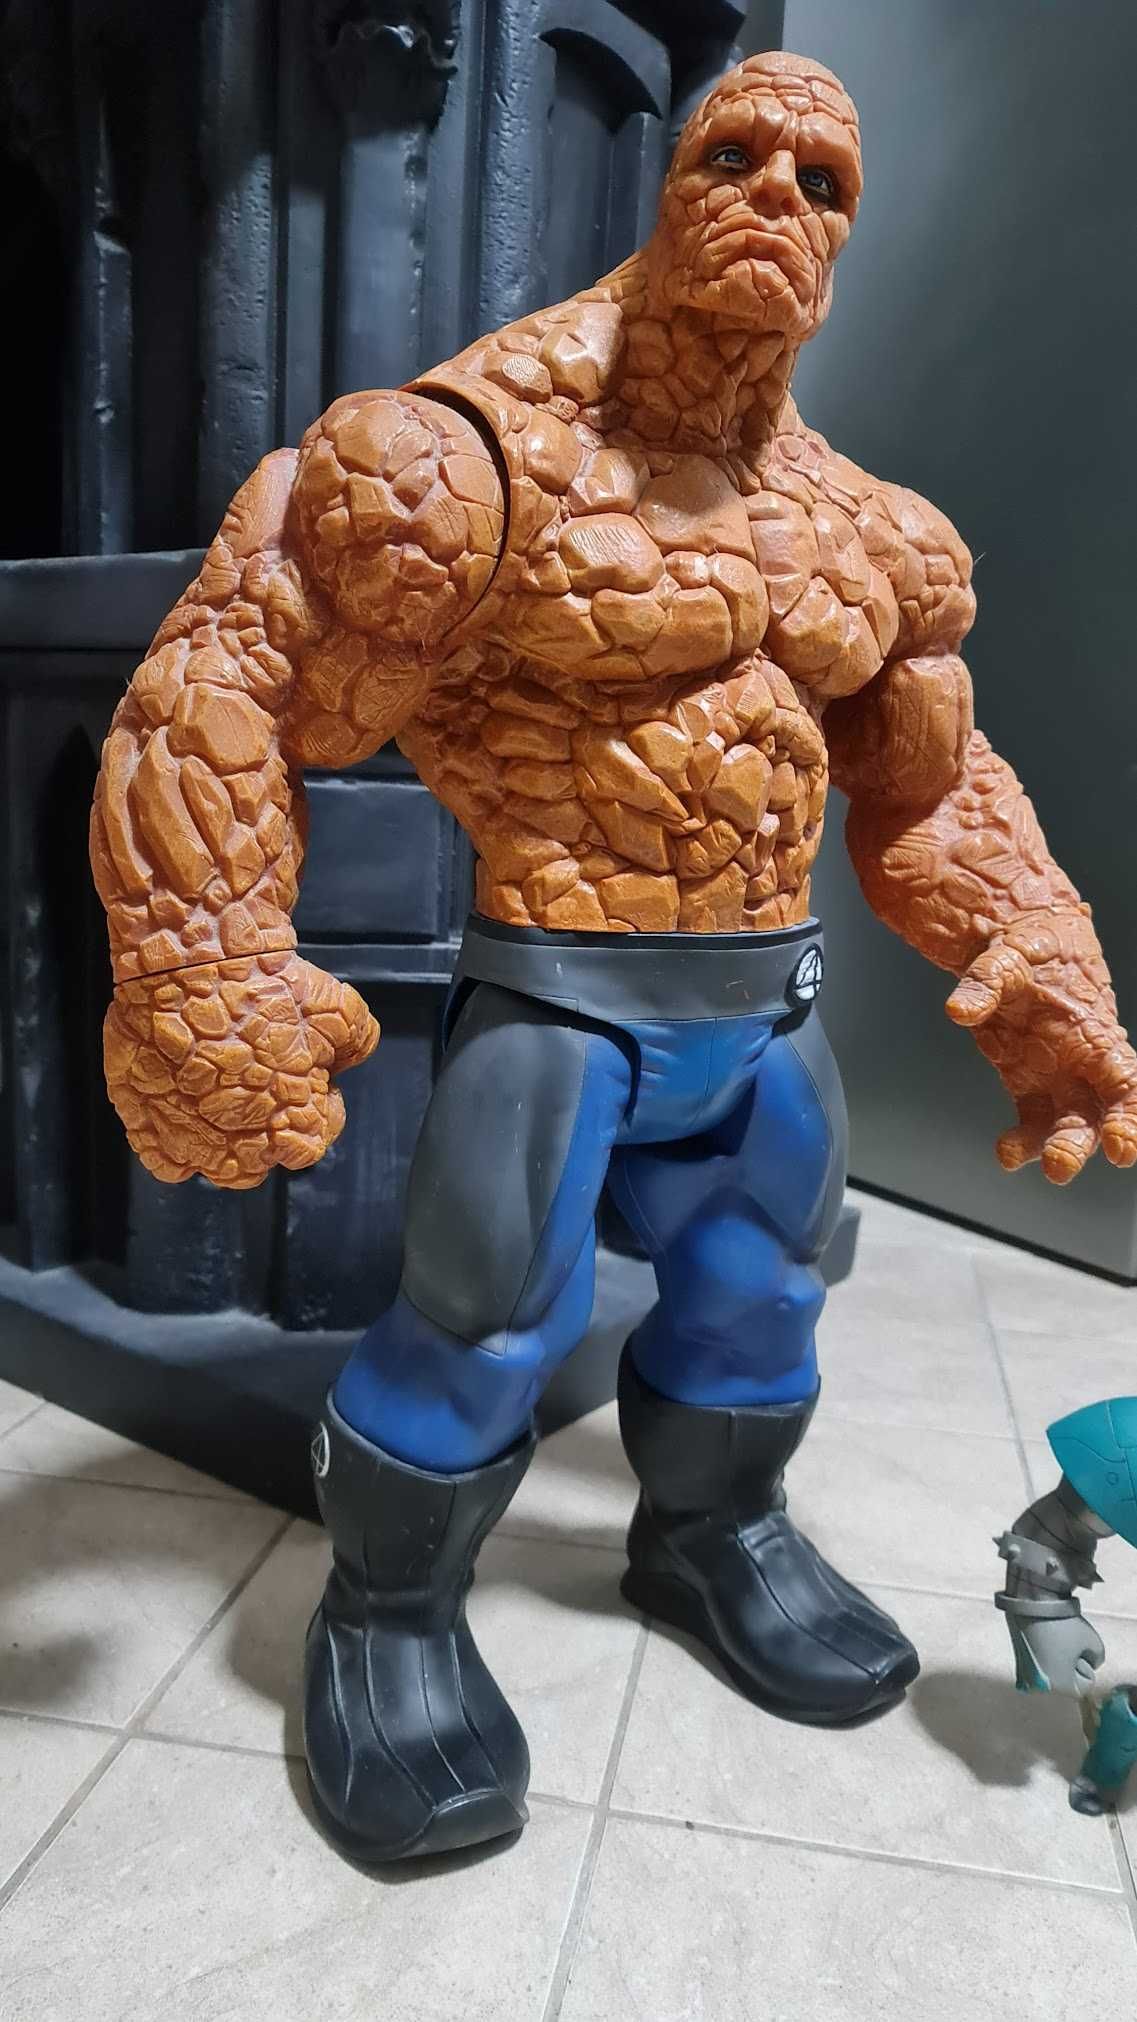 THe Thing Marvel - Fantastic Four figurina uriasa (rara) 70 cm